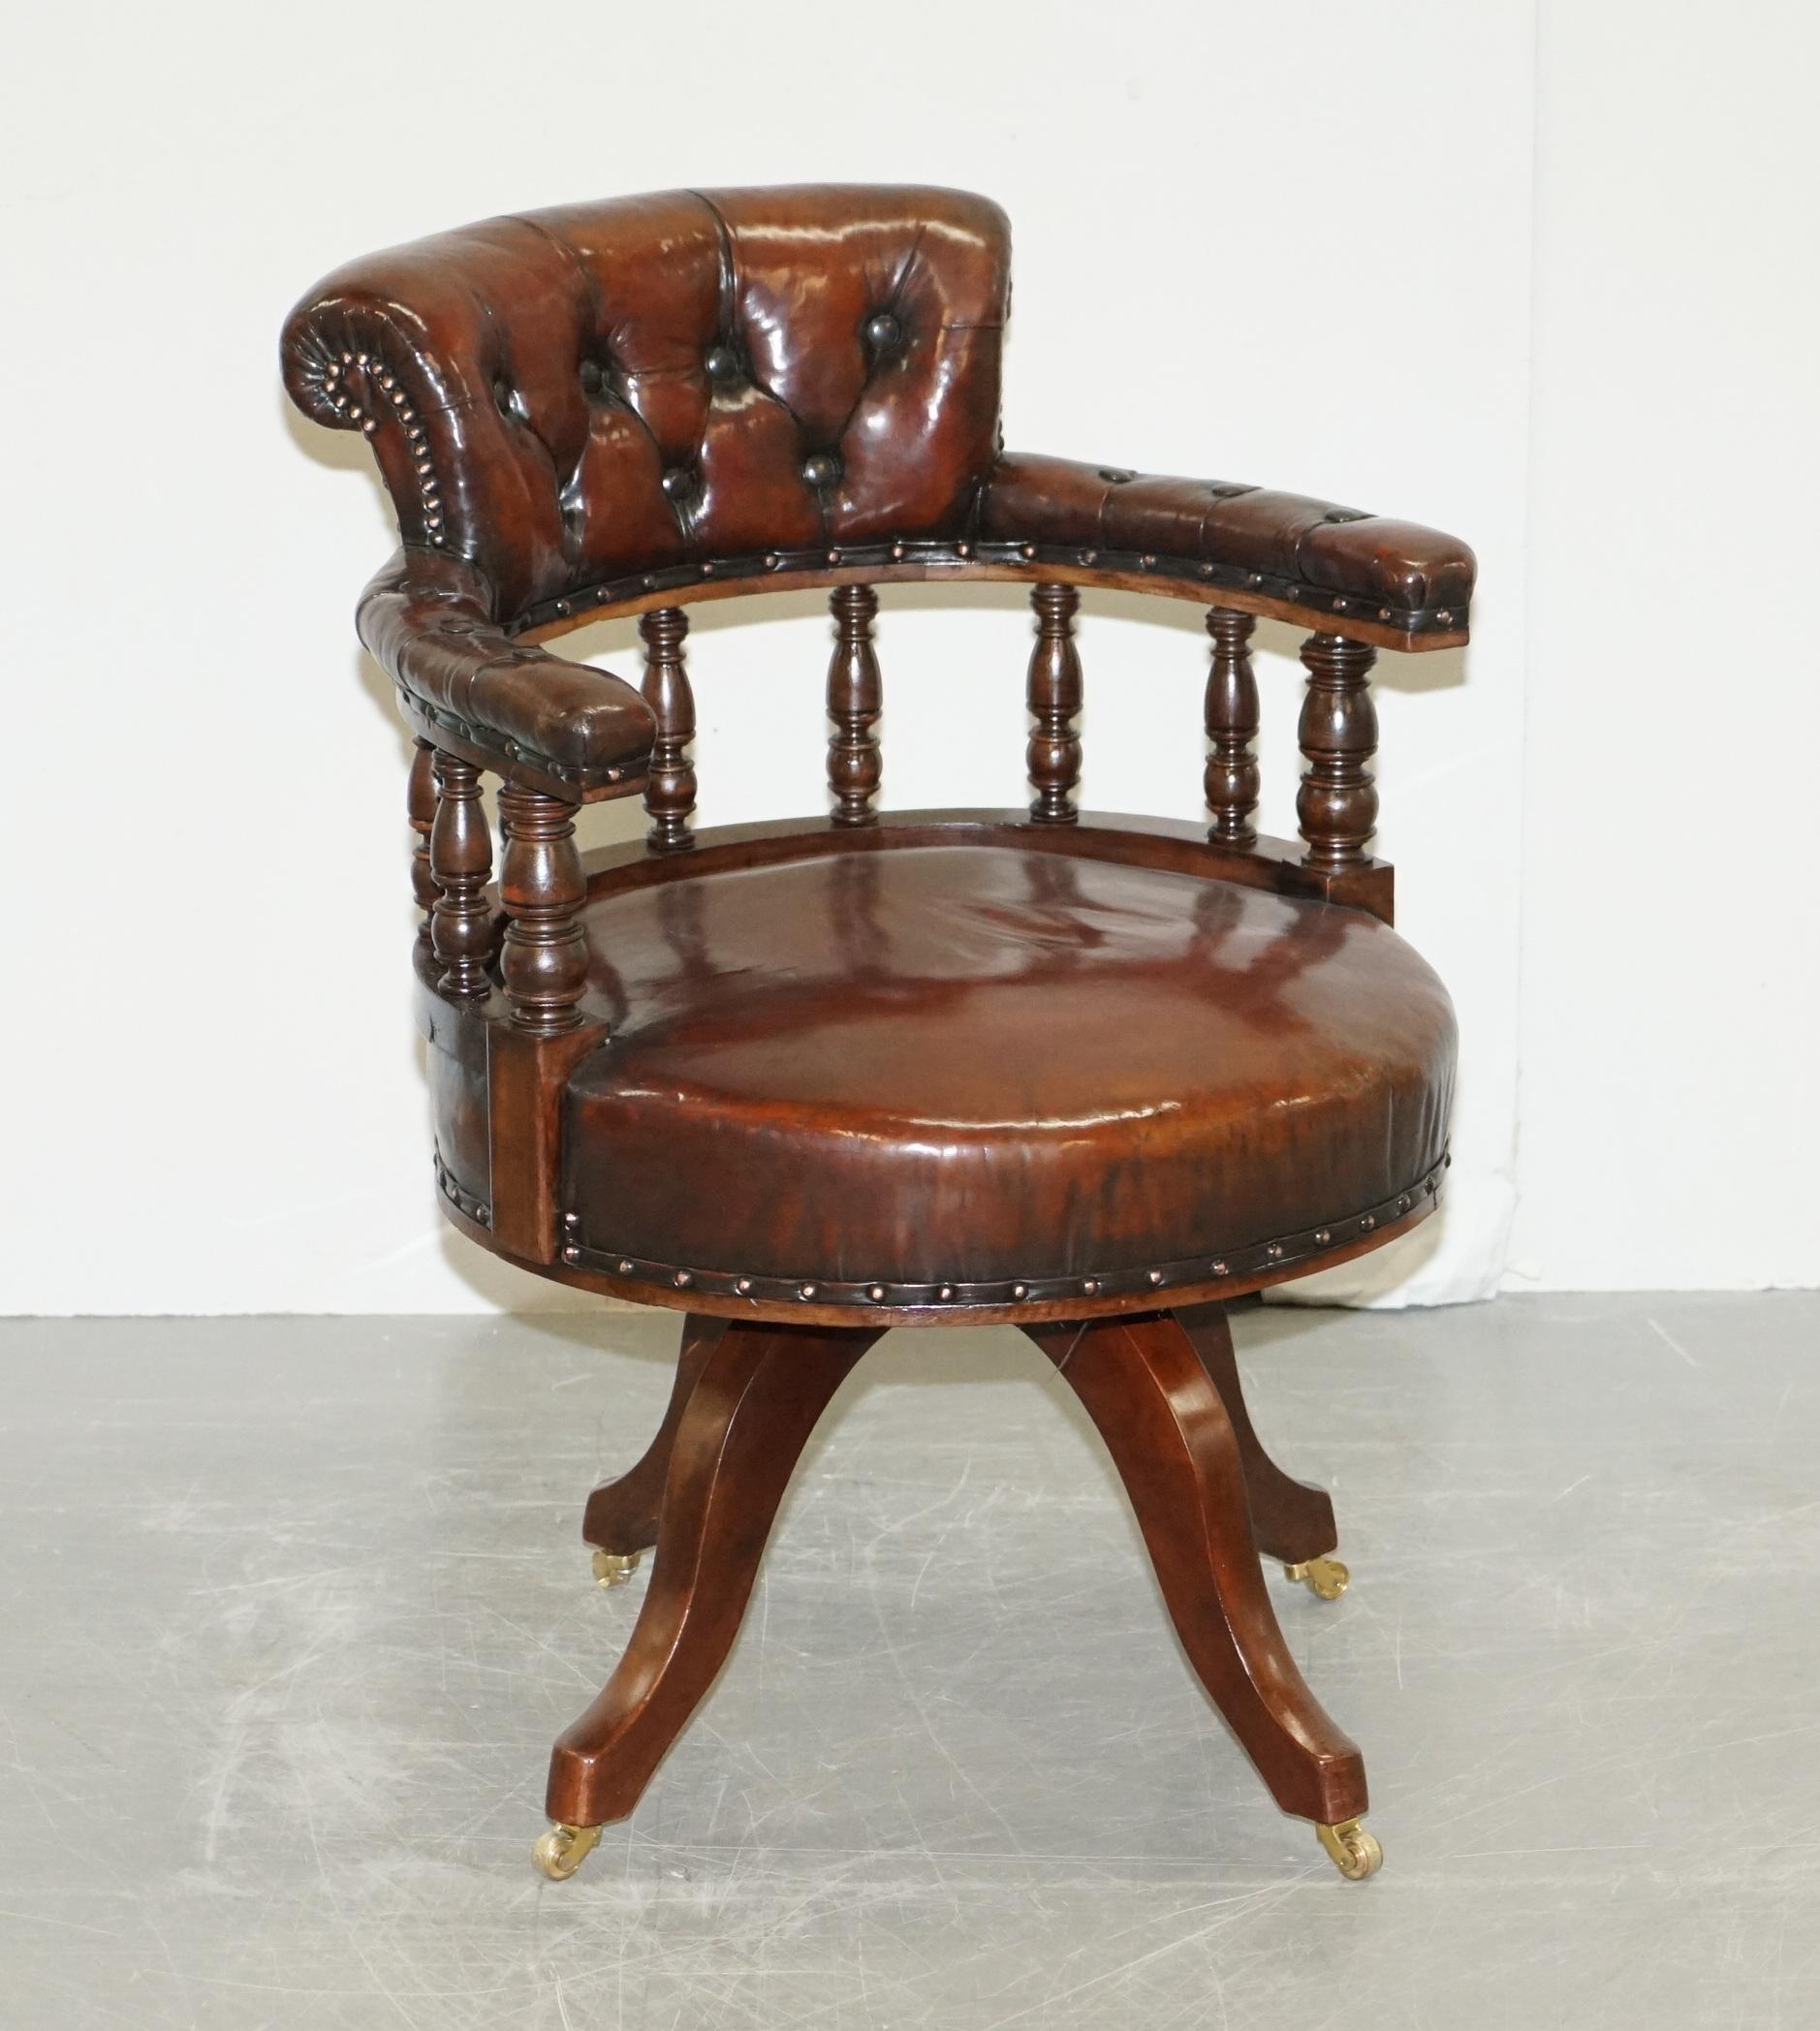 Nous sommes ravis d'offrir à la vente ce rare fauteuil de bureau en cuir brun teint à la main, entièrement restauré, datant de 1860

Cette chaise est vraiment exquise, c'est l'un des plus anciens types de chaises pivotantes que j'ai jamais vu, le